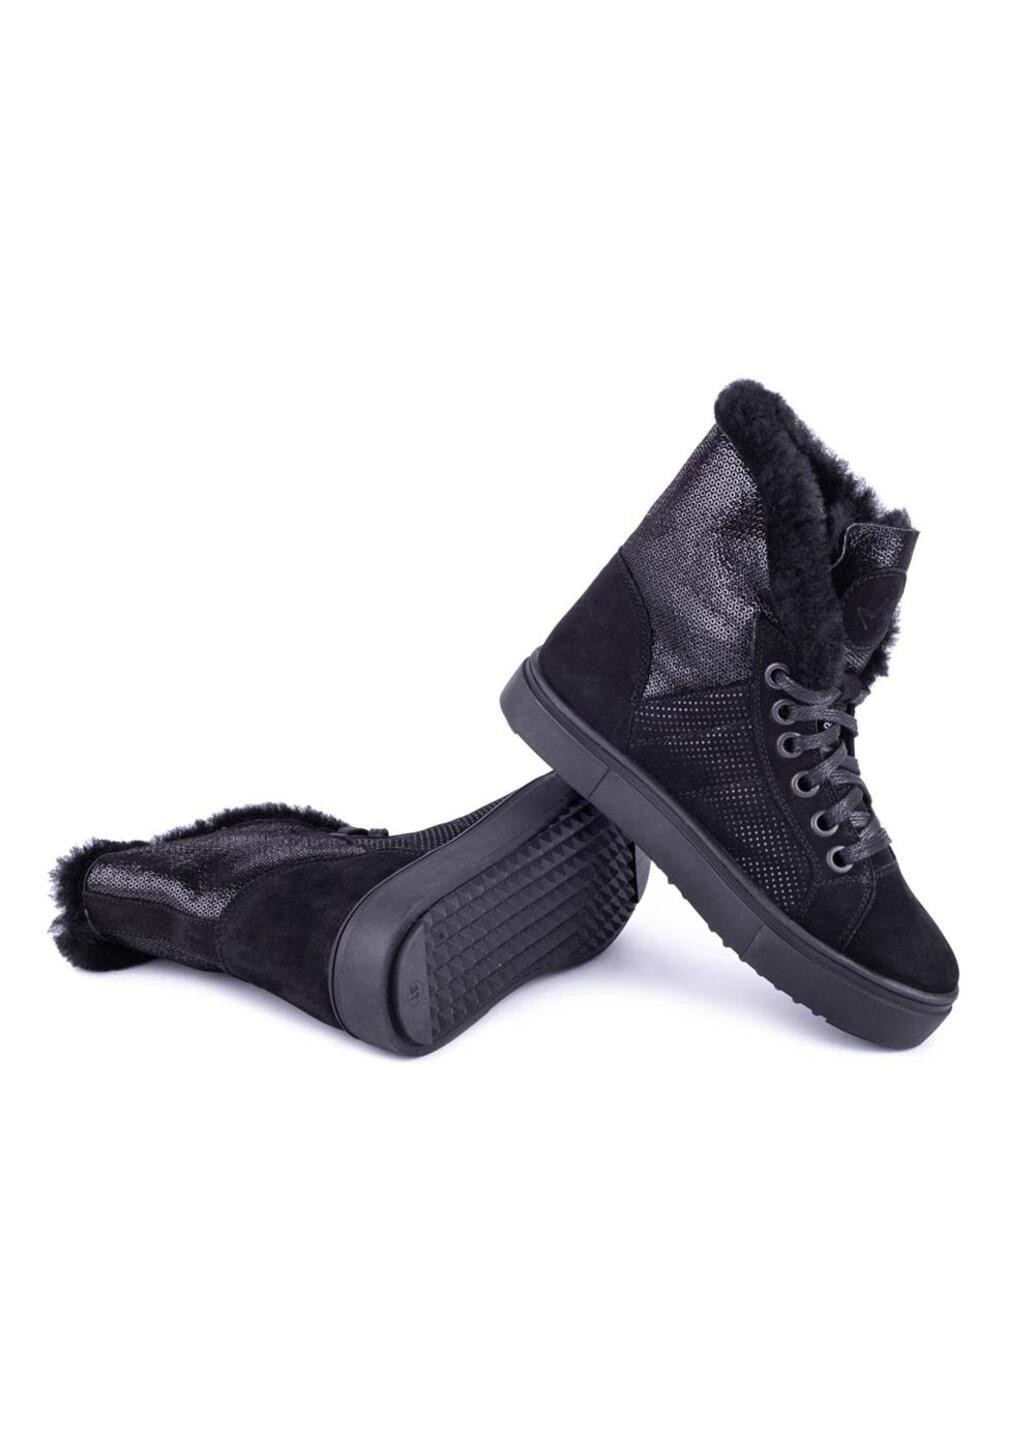 Зимние ботинки женские бренда 8500764_(52ш) Mida из натурального нубука